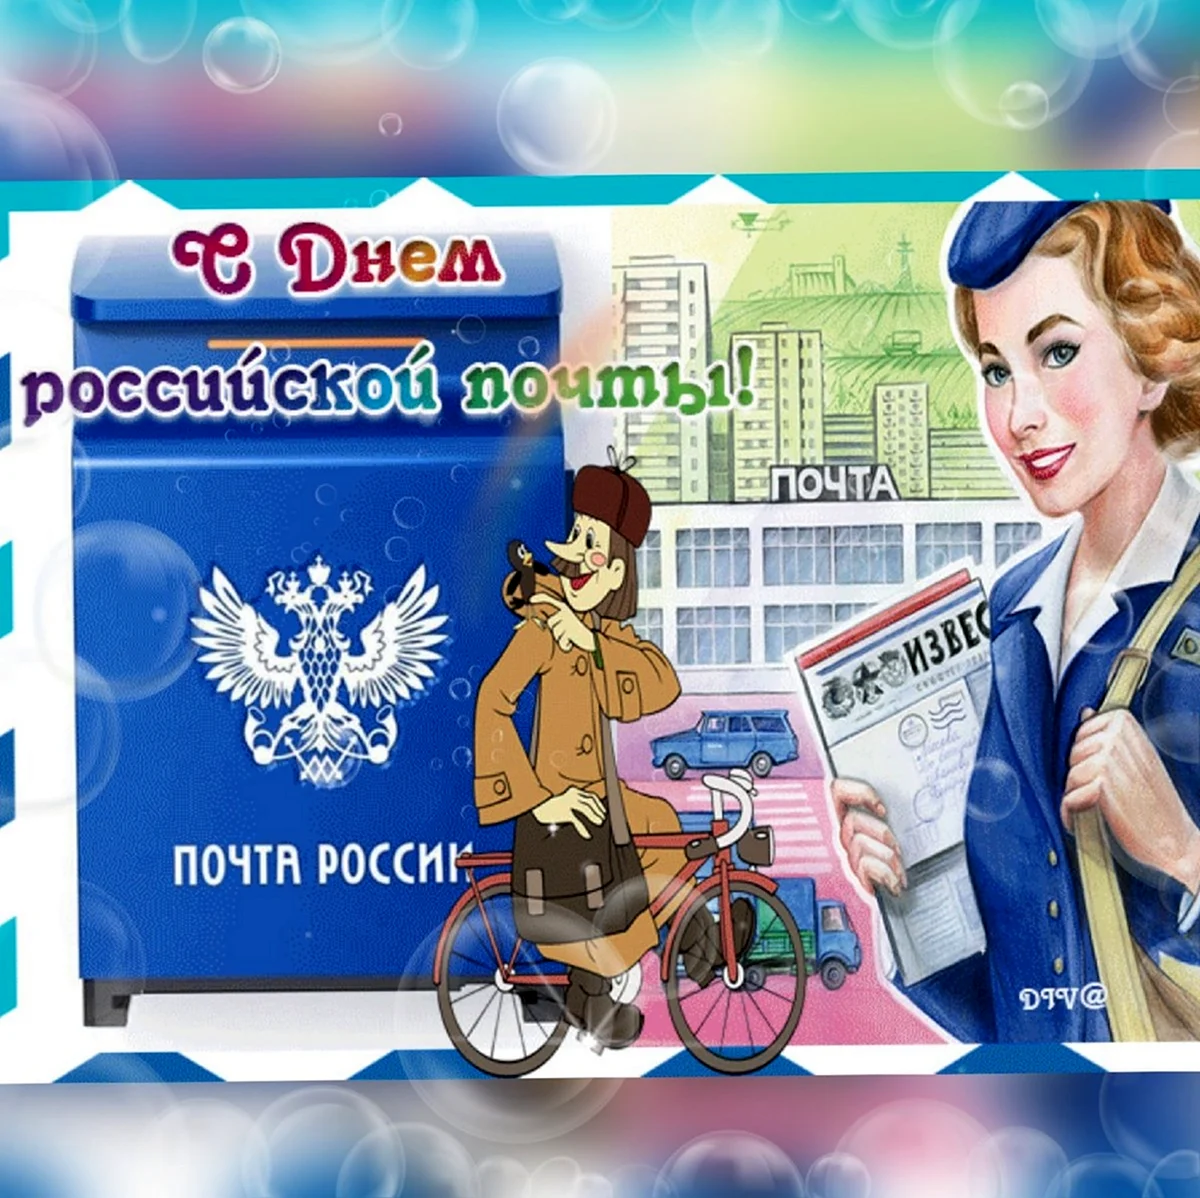 11 Июля день Российской почты. Красивая картинка